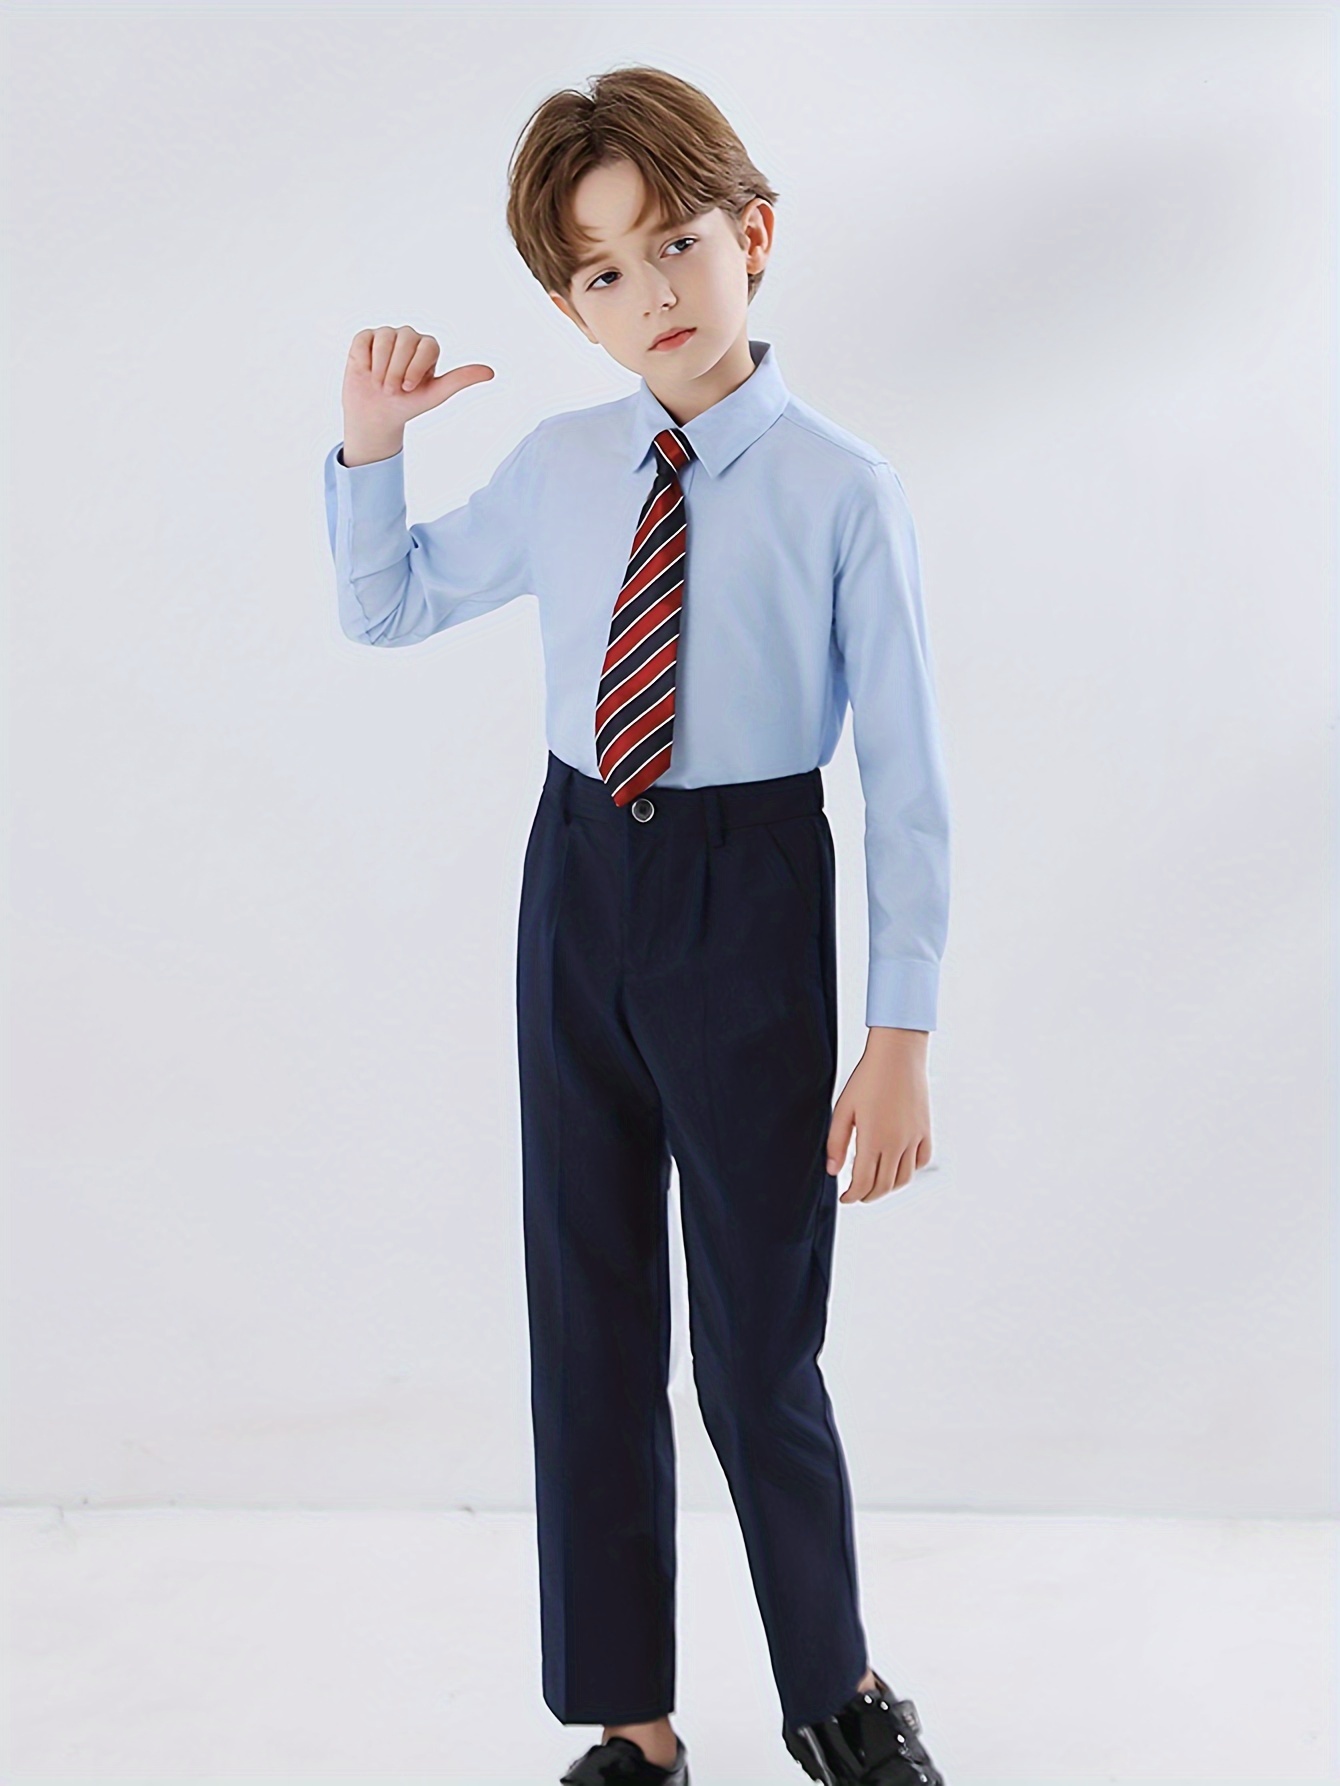 Lilgiuy Little Boys School Uniform Pants Fashion Solid Color Stretch  Elastic Adjustable Waist Slim Fit Suit Pants for School Blue (18-24 Months)  